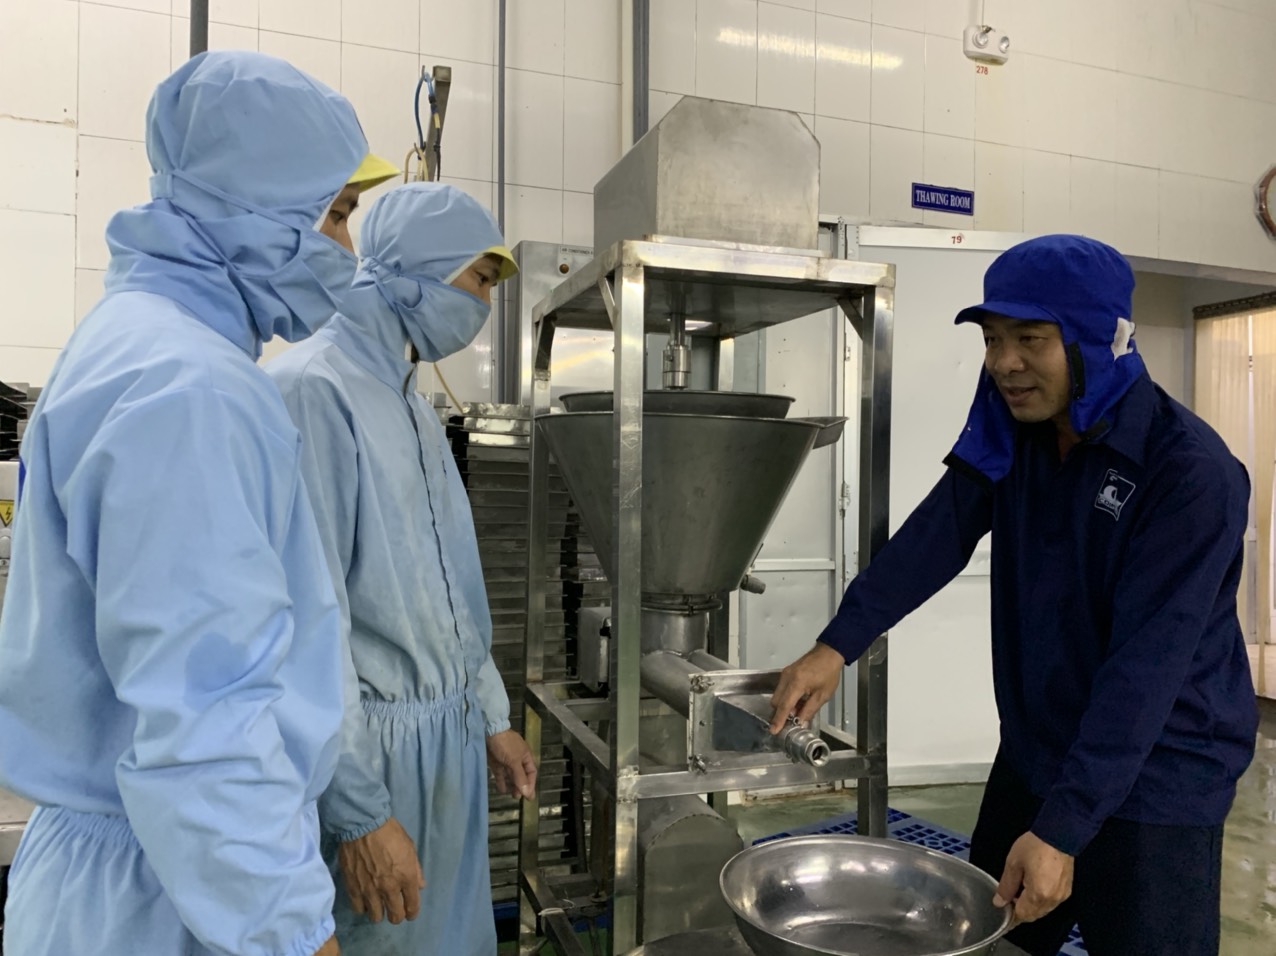 Anh Mã Thành Phương hướng dẫn công nhân sử dụng máy “Cải tiến, chế tạo máy bơm định lượng sản phẩm phối trộn giữa surimi với các loại rau củ”.